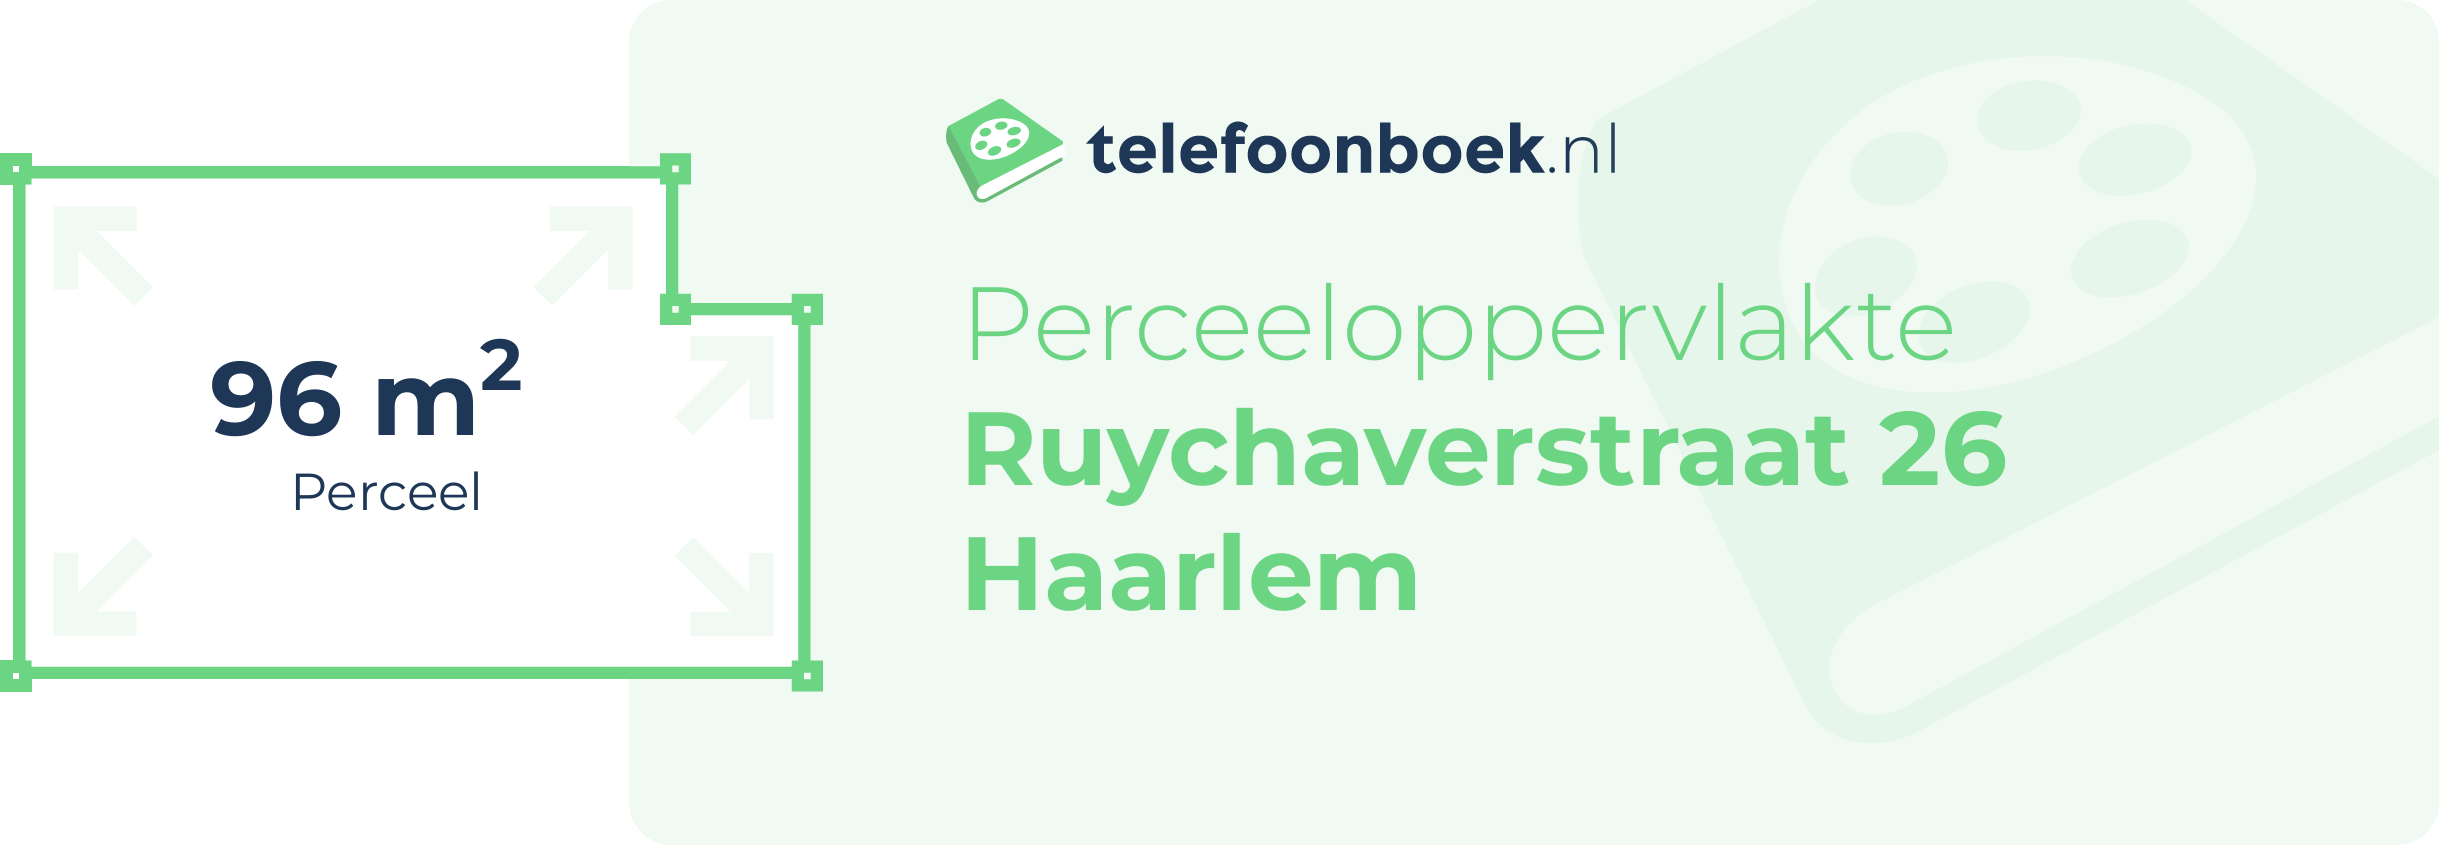 Perceeloppervlakte Ruychaverstraat 26 Haarlem